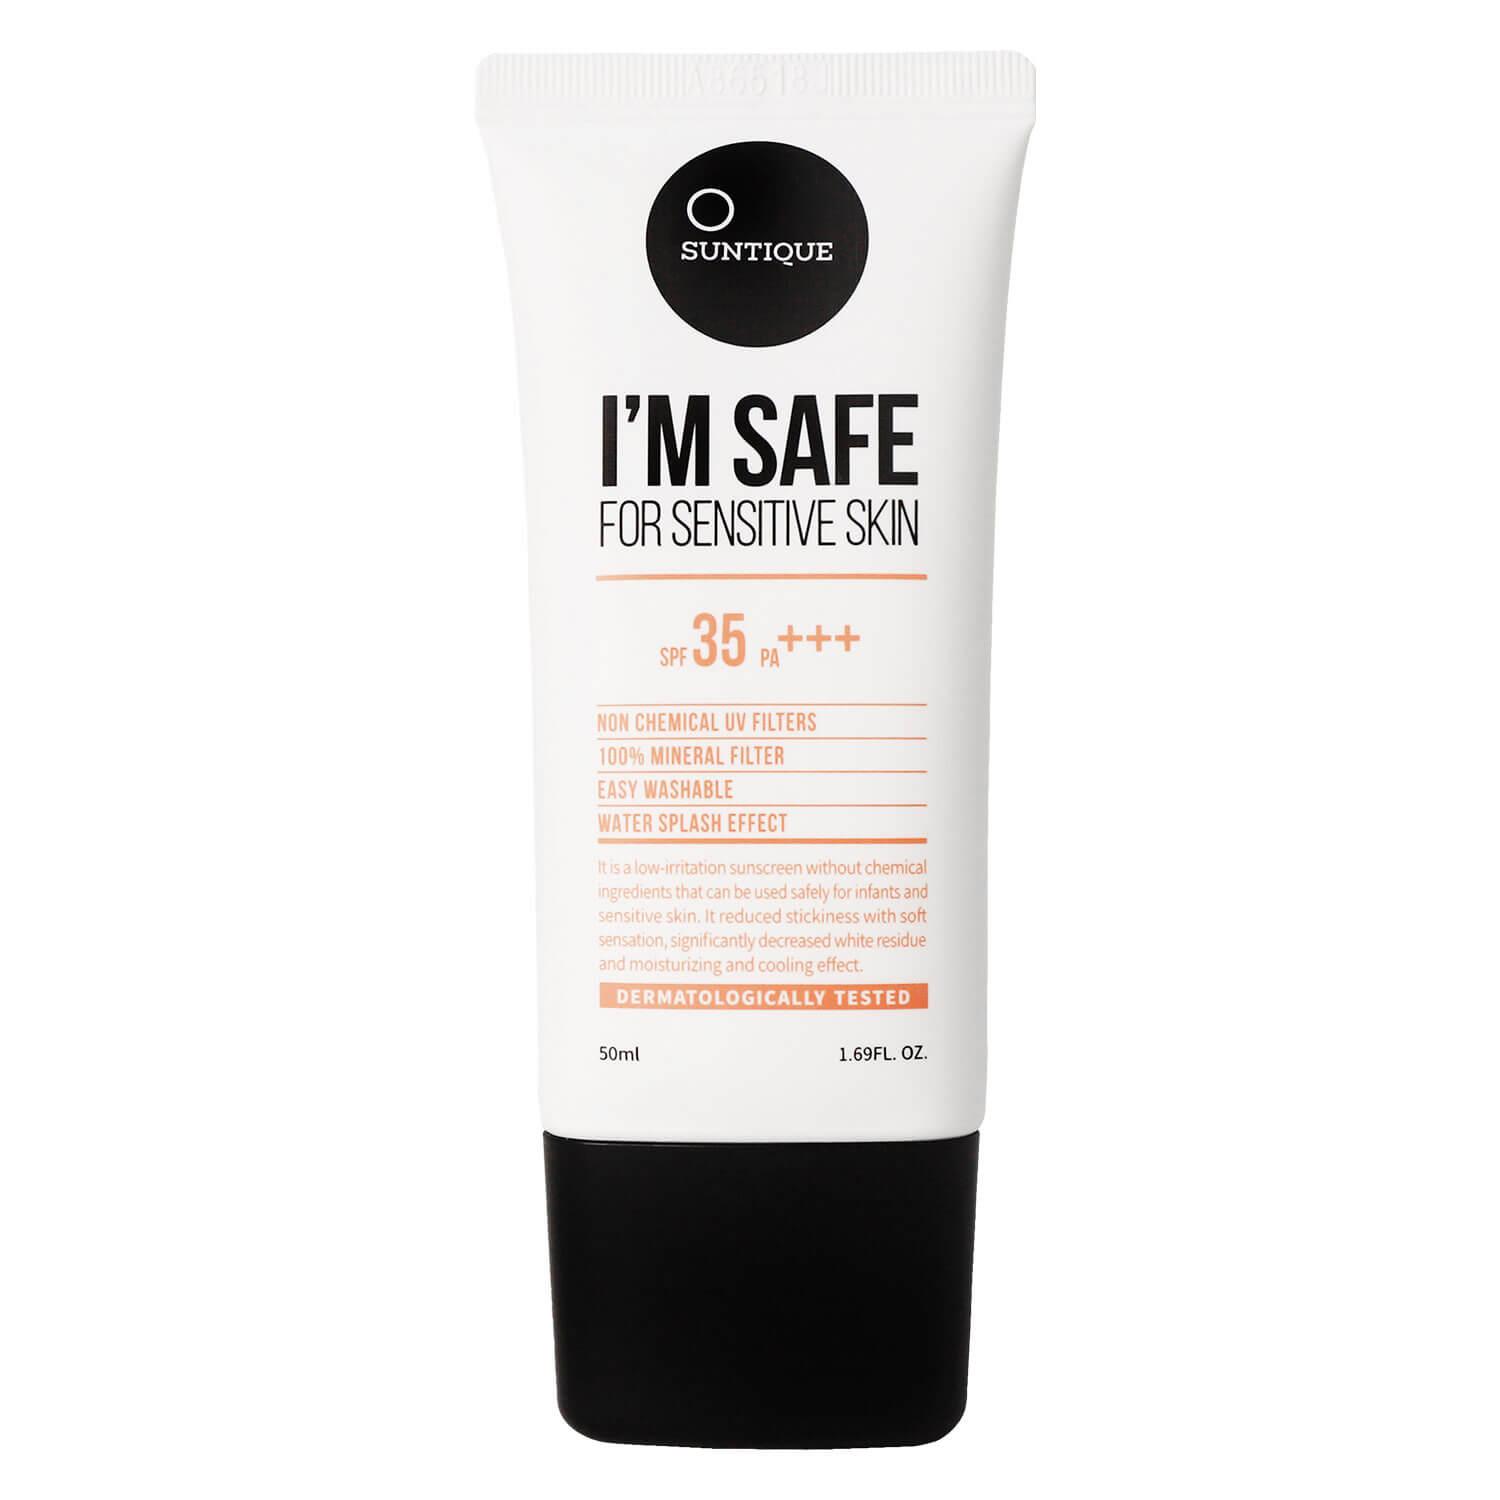 SUNTIQUE - I'M SAFE For Sensitive Skin SPF35